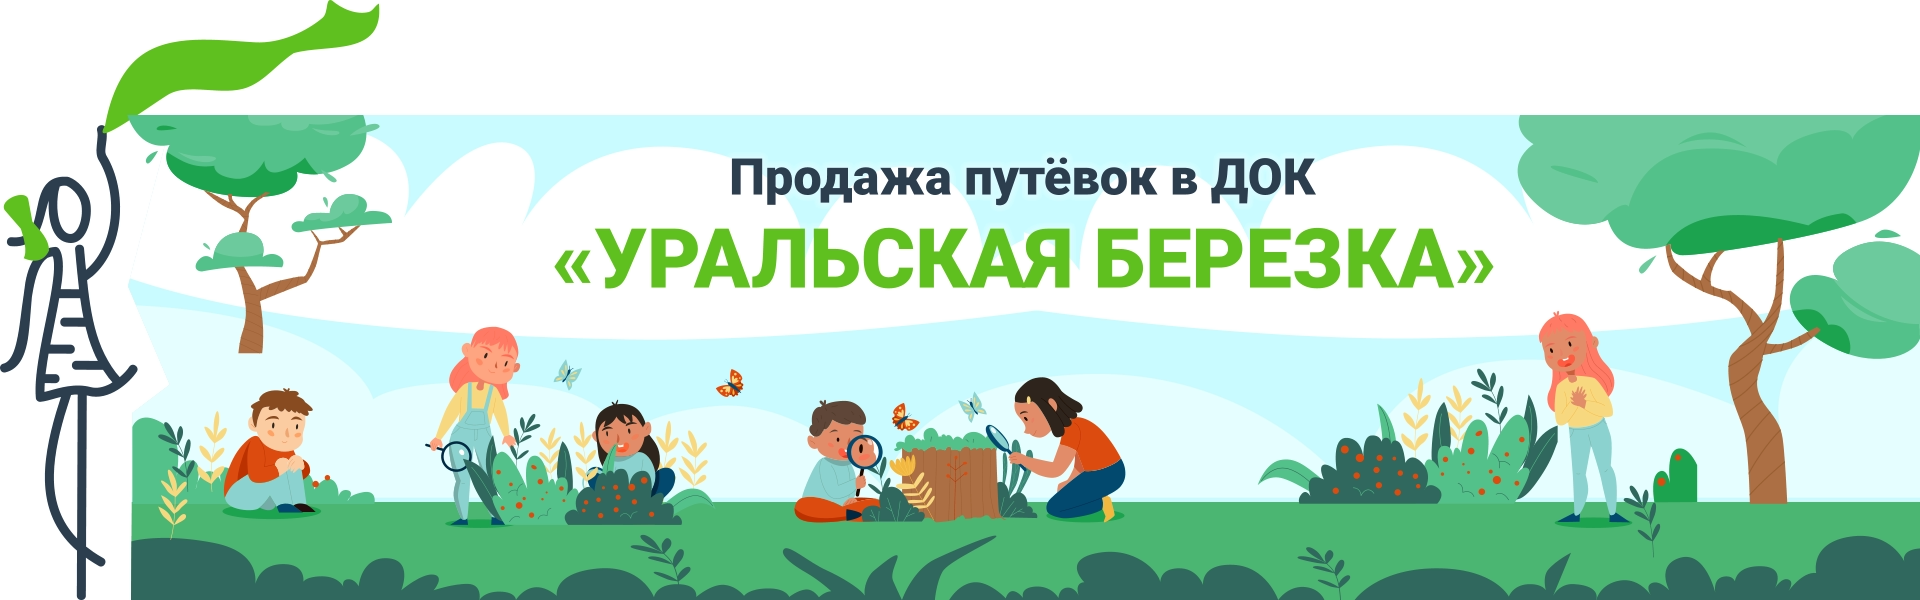 Купить путевку в детский оздоровительный лагерь «Уральская березка»